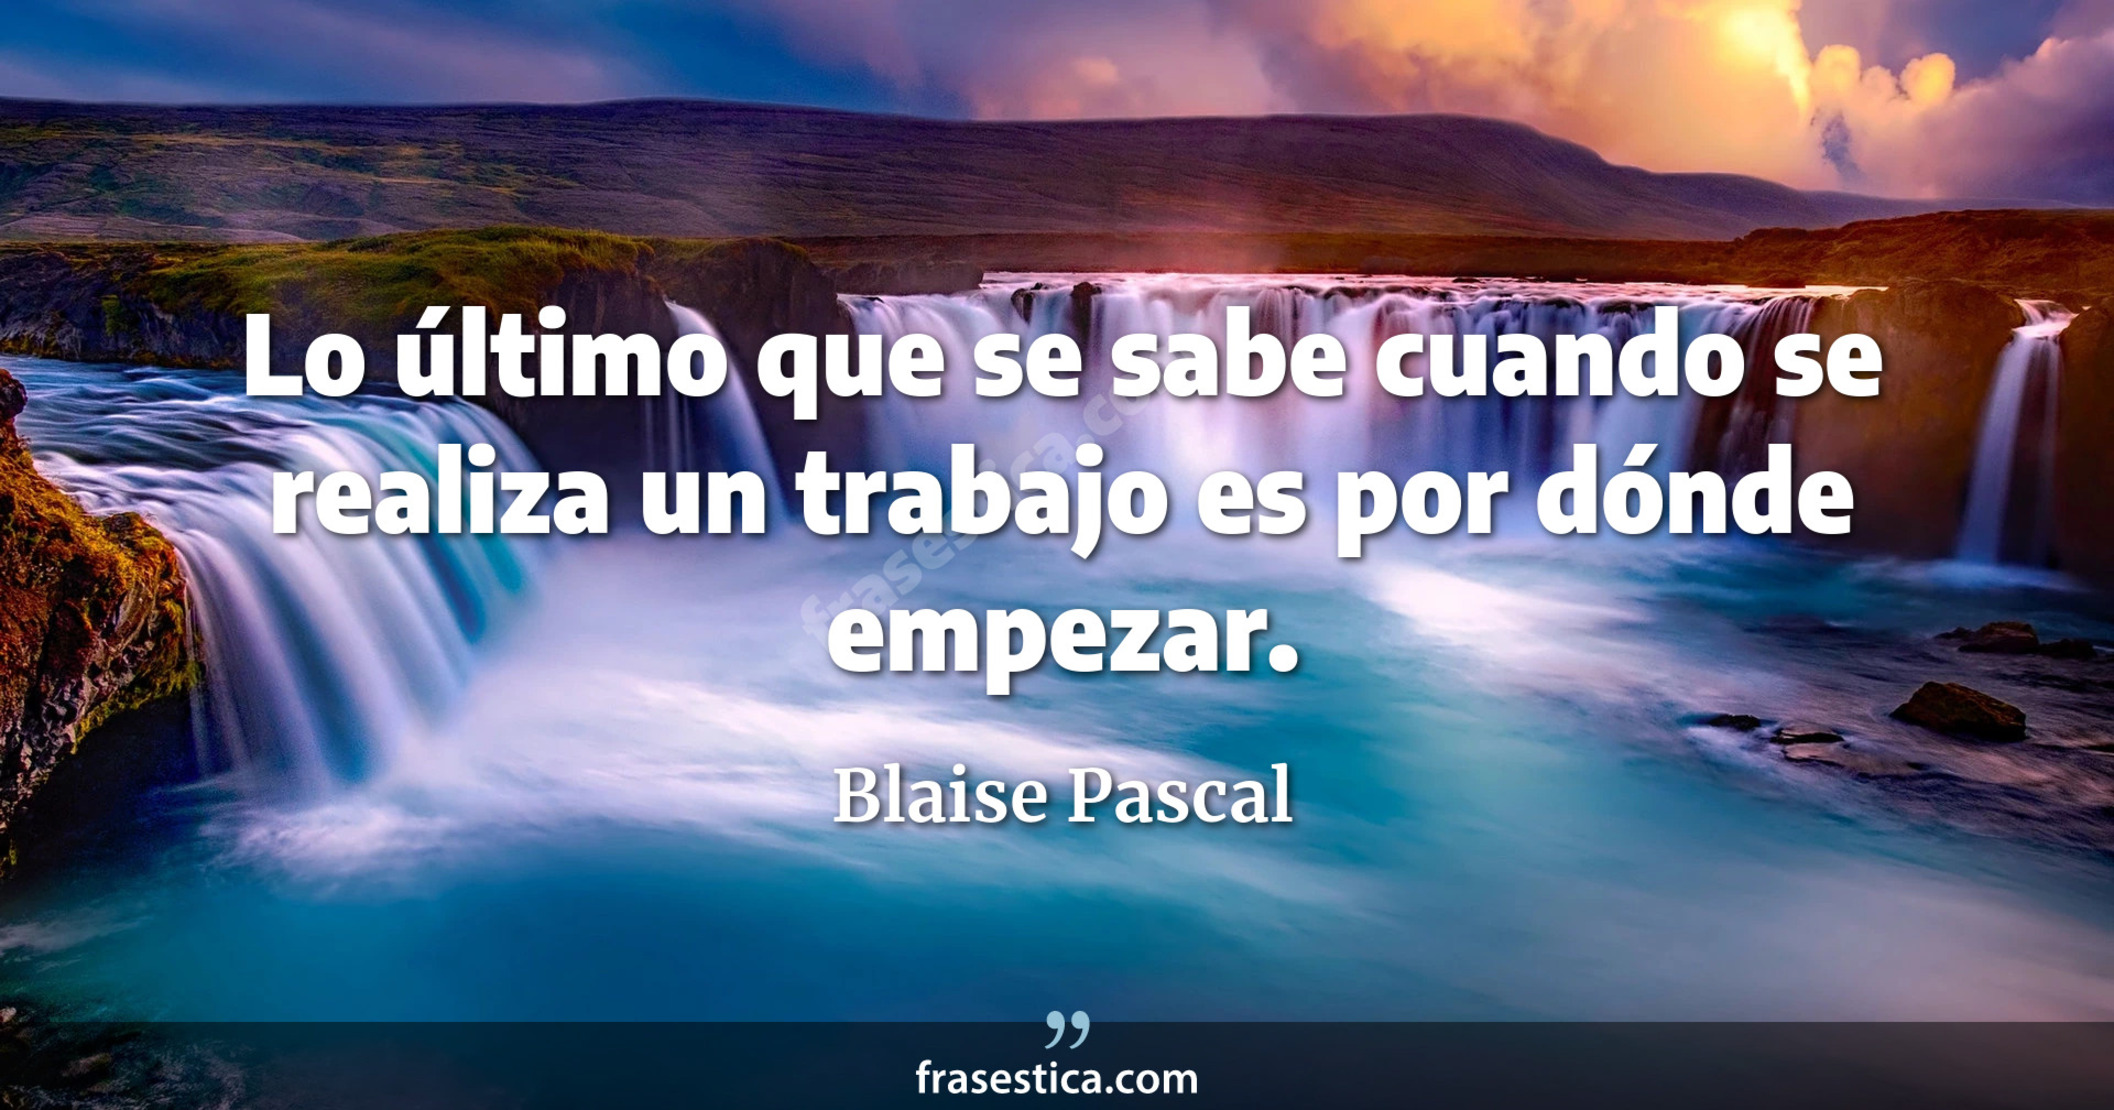 Lo último que se sabe cuando se realiza un trabajo es por dónde empezar. - Blaise Pascal